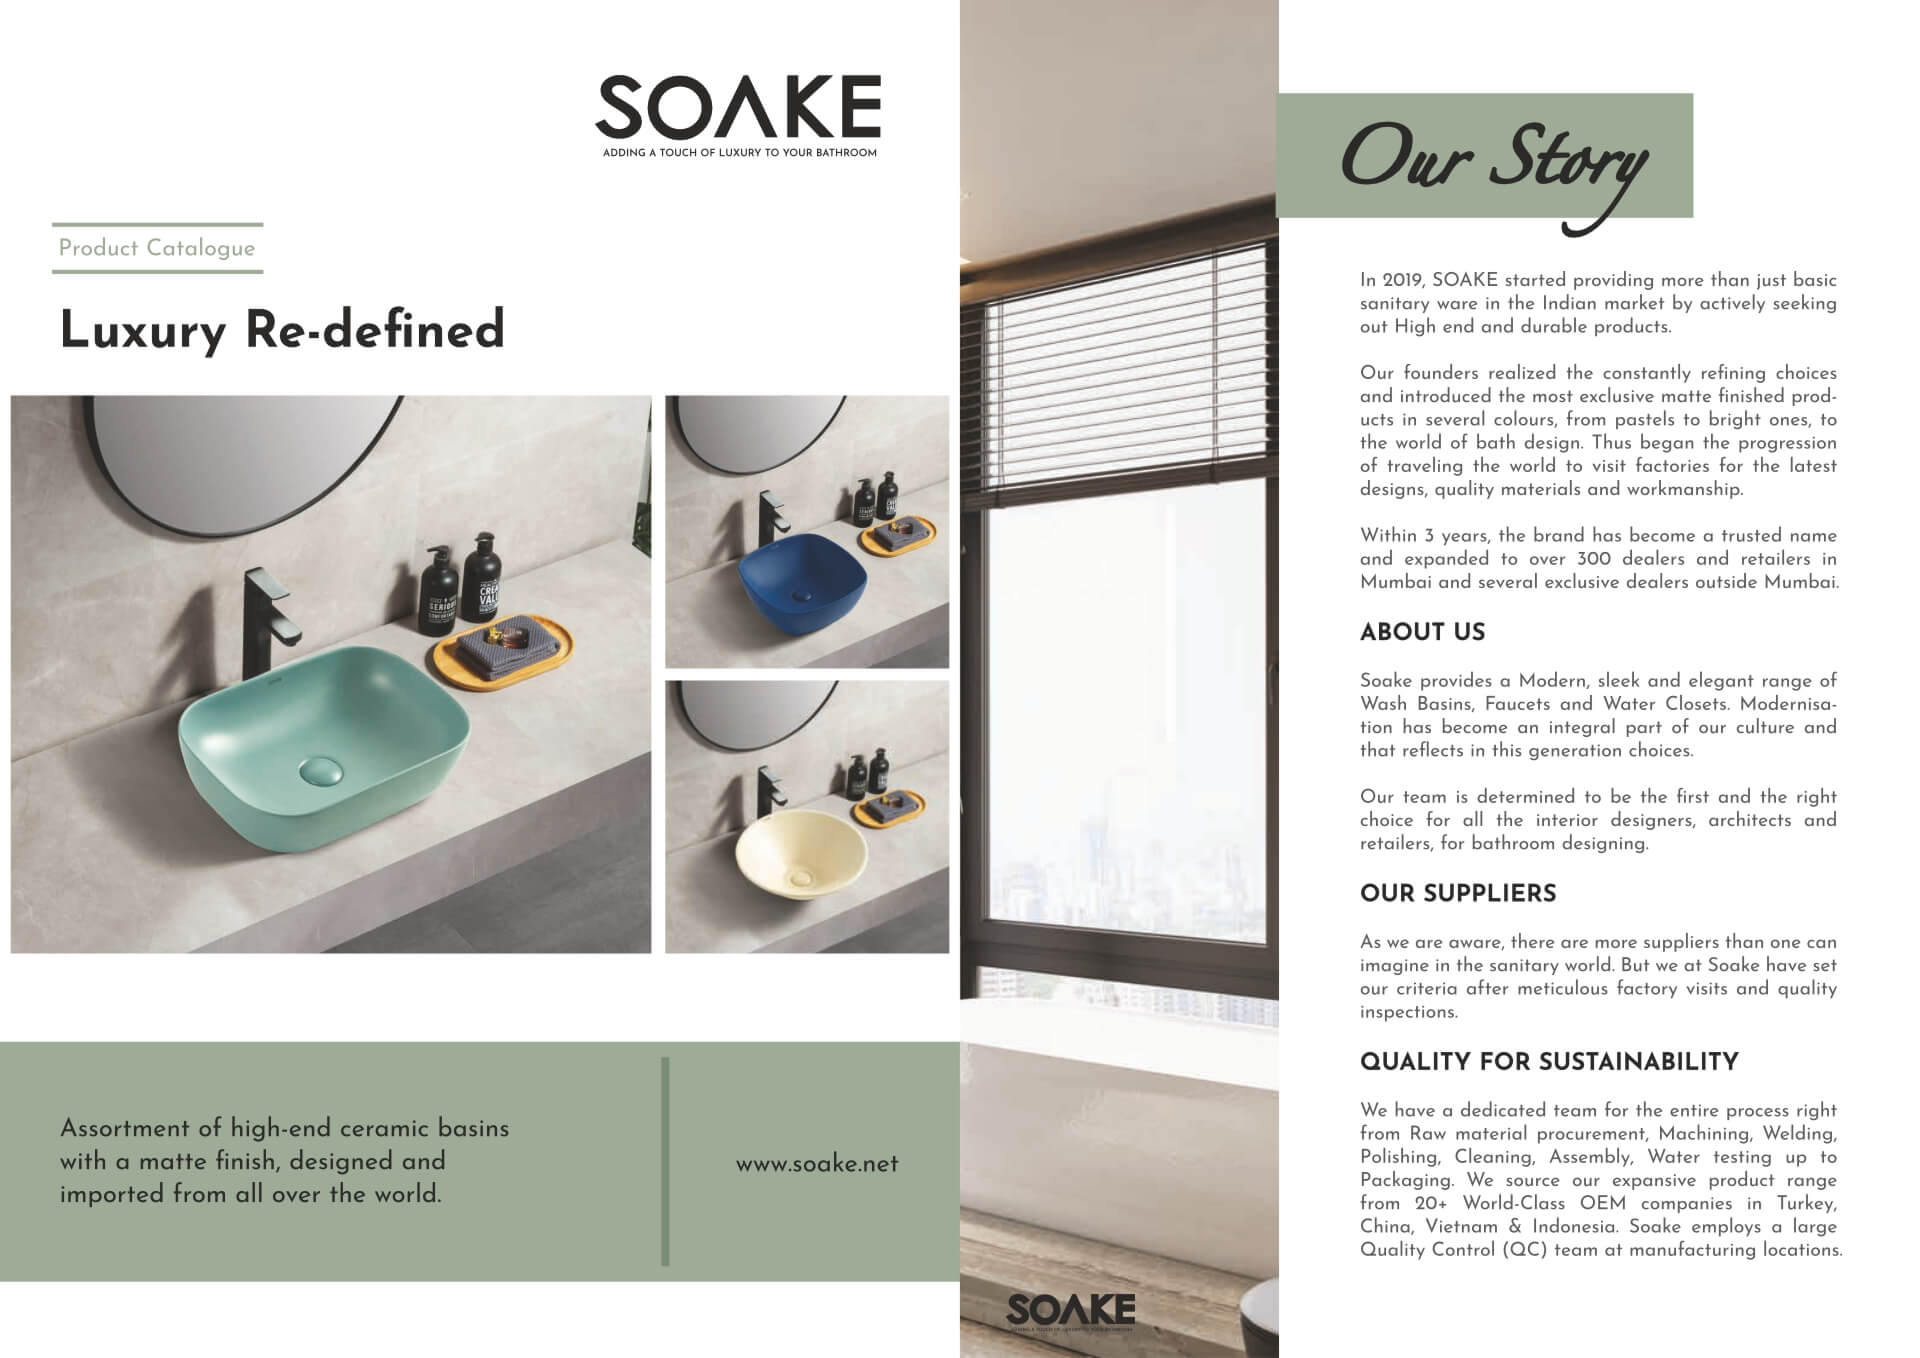 About SOAKE Lifetime Bath & Kitchen